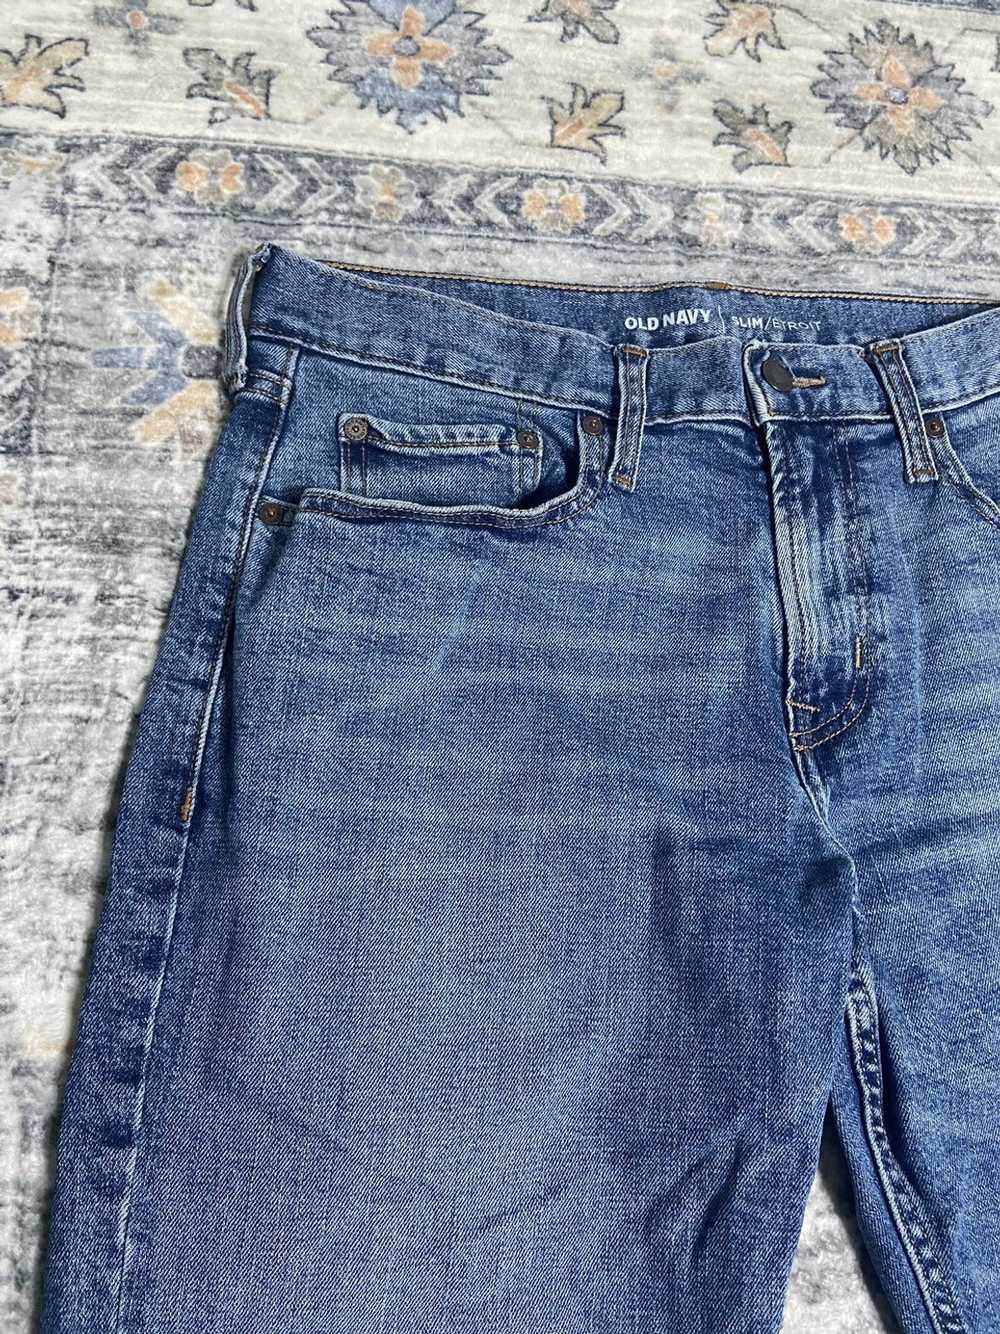 Jean × Old Navy × Vintage Vintage Denim Jeans - image 5